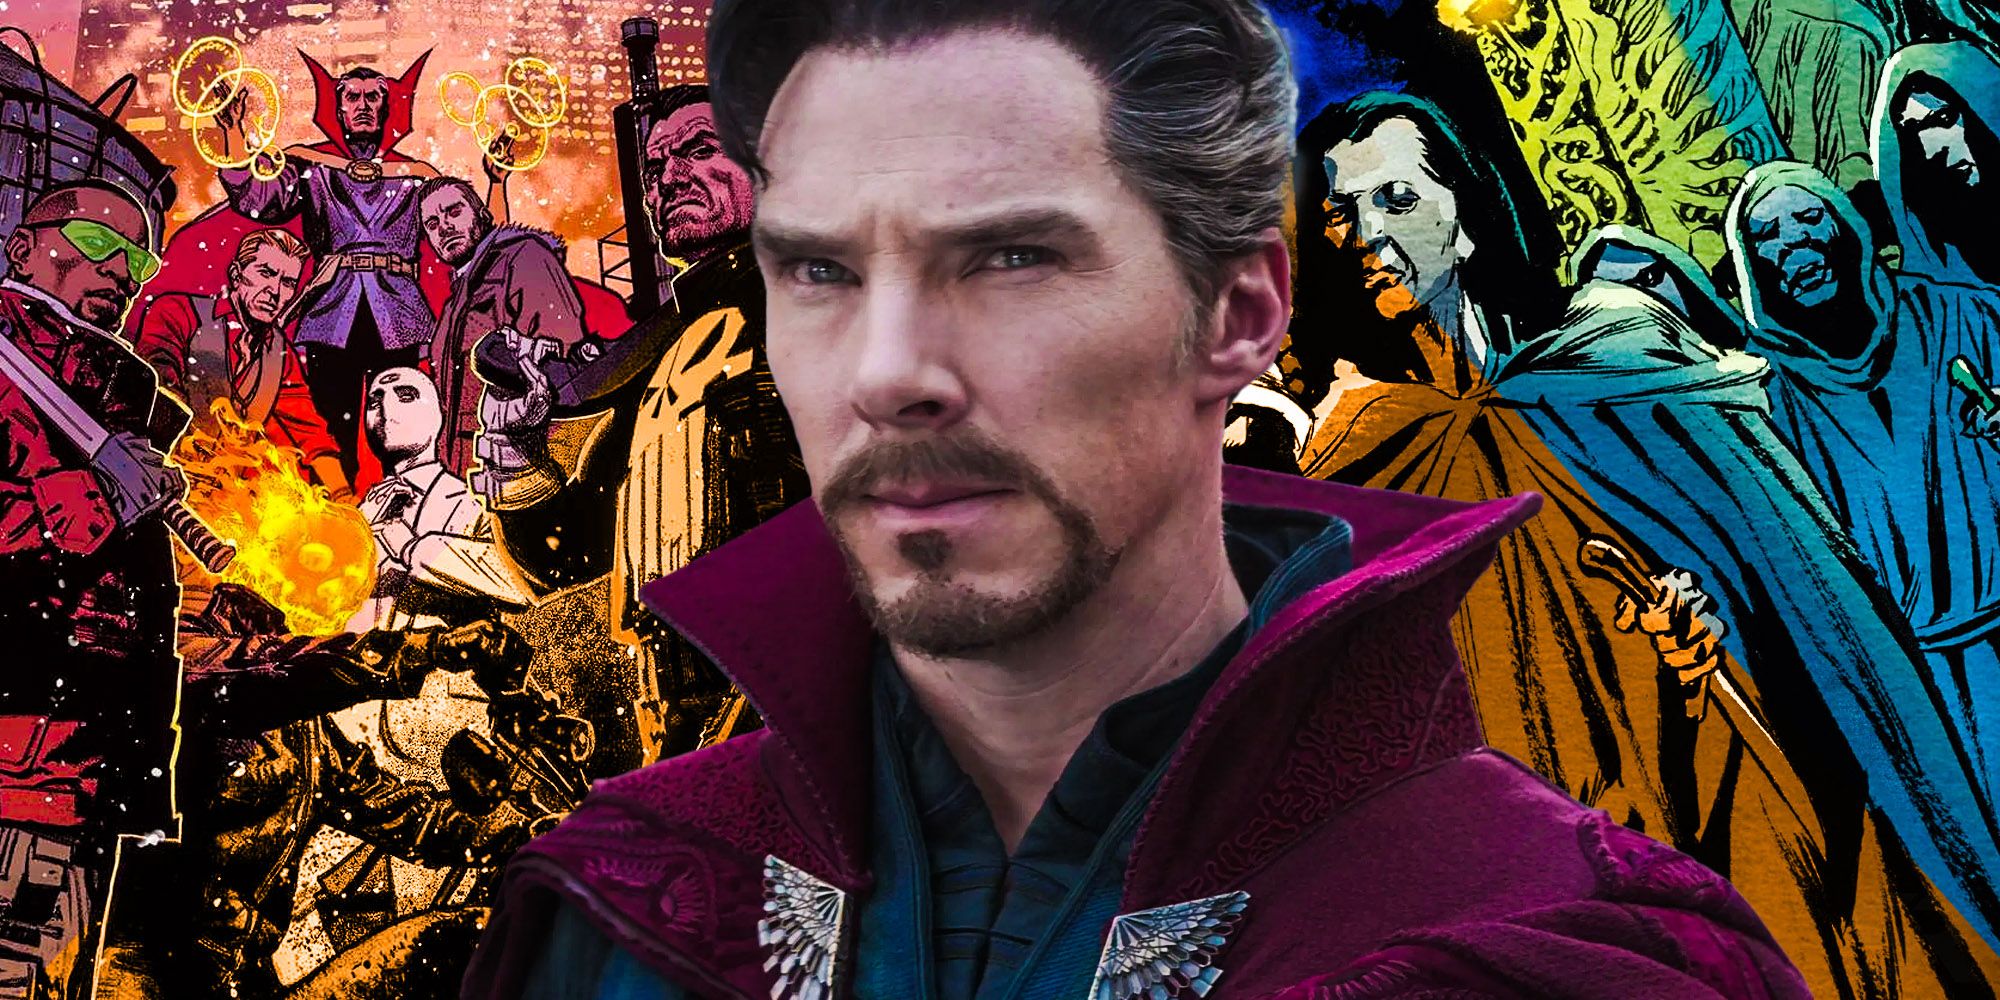 Phản anh hùng mới của Marvel hóa ra là người quen của Doctor Strange, một mẩu quan trọng của Midnight Sons